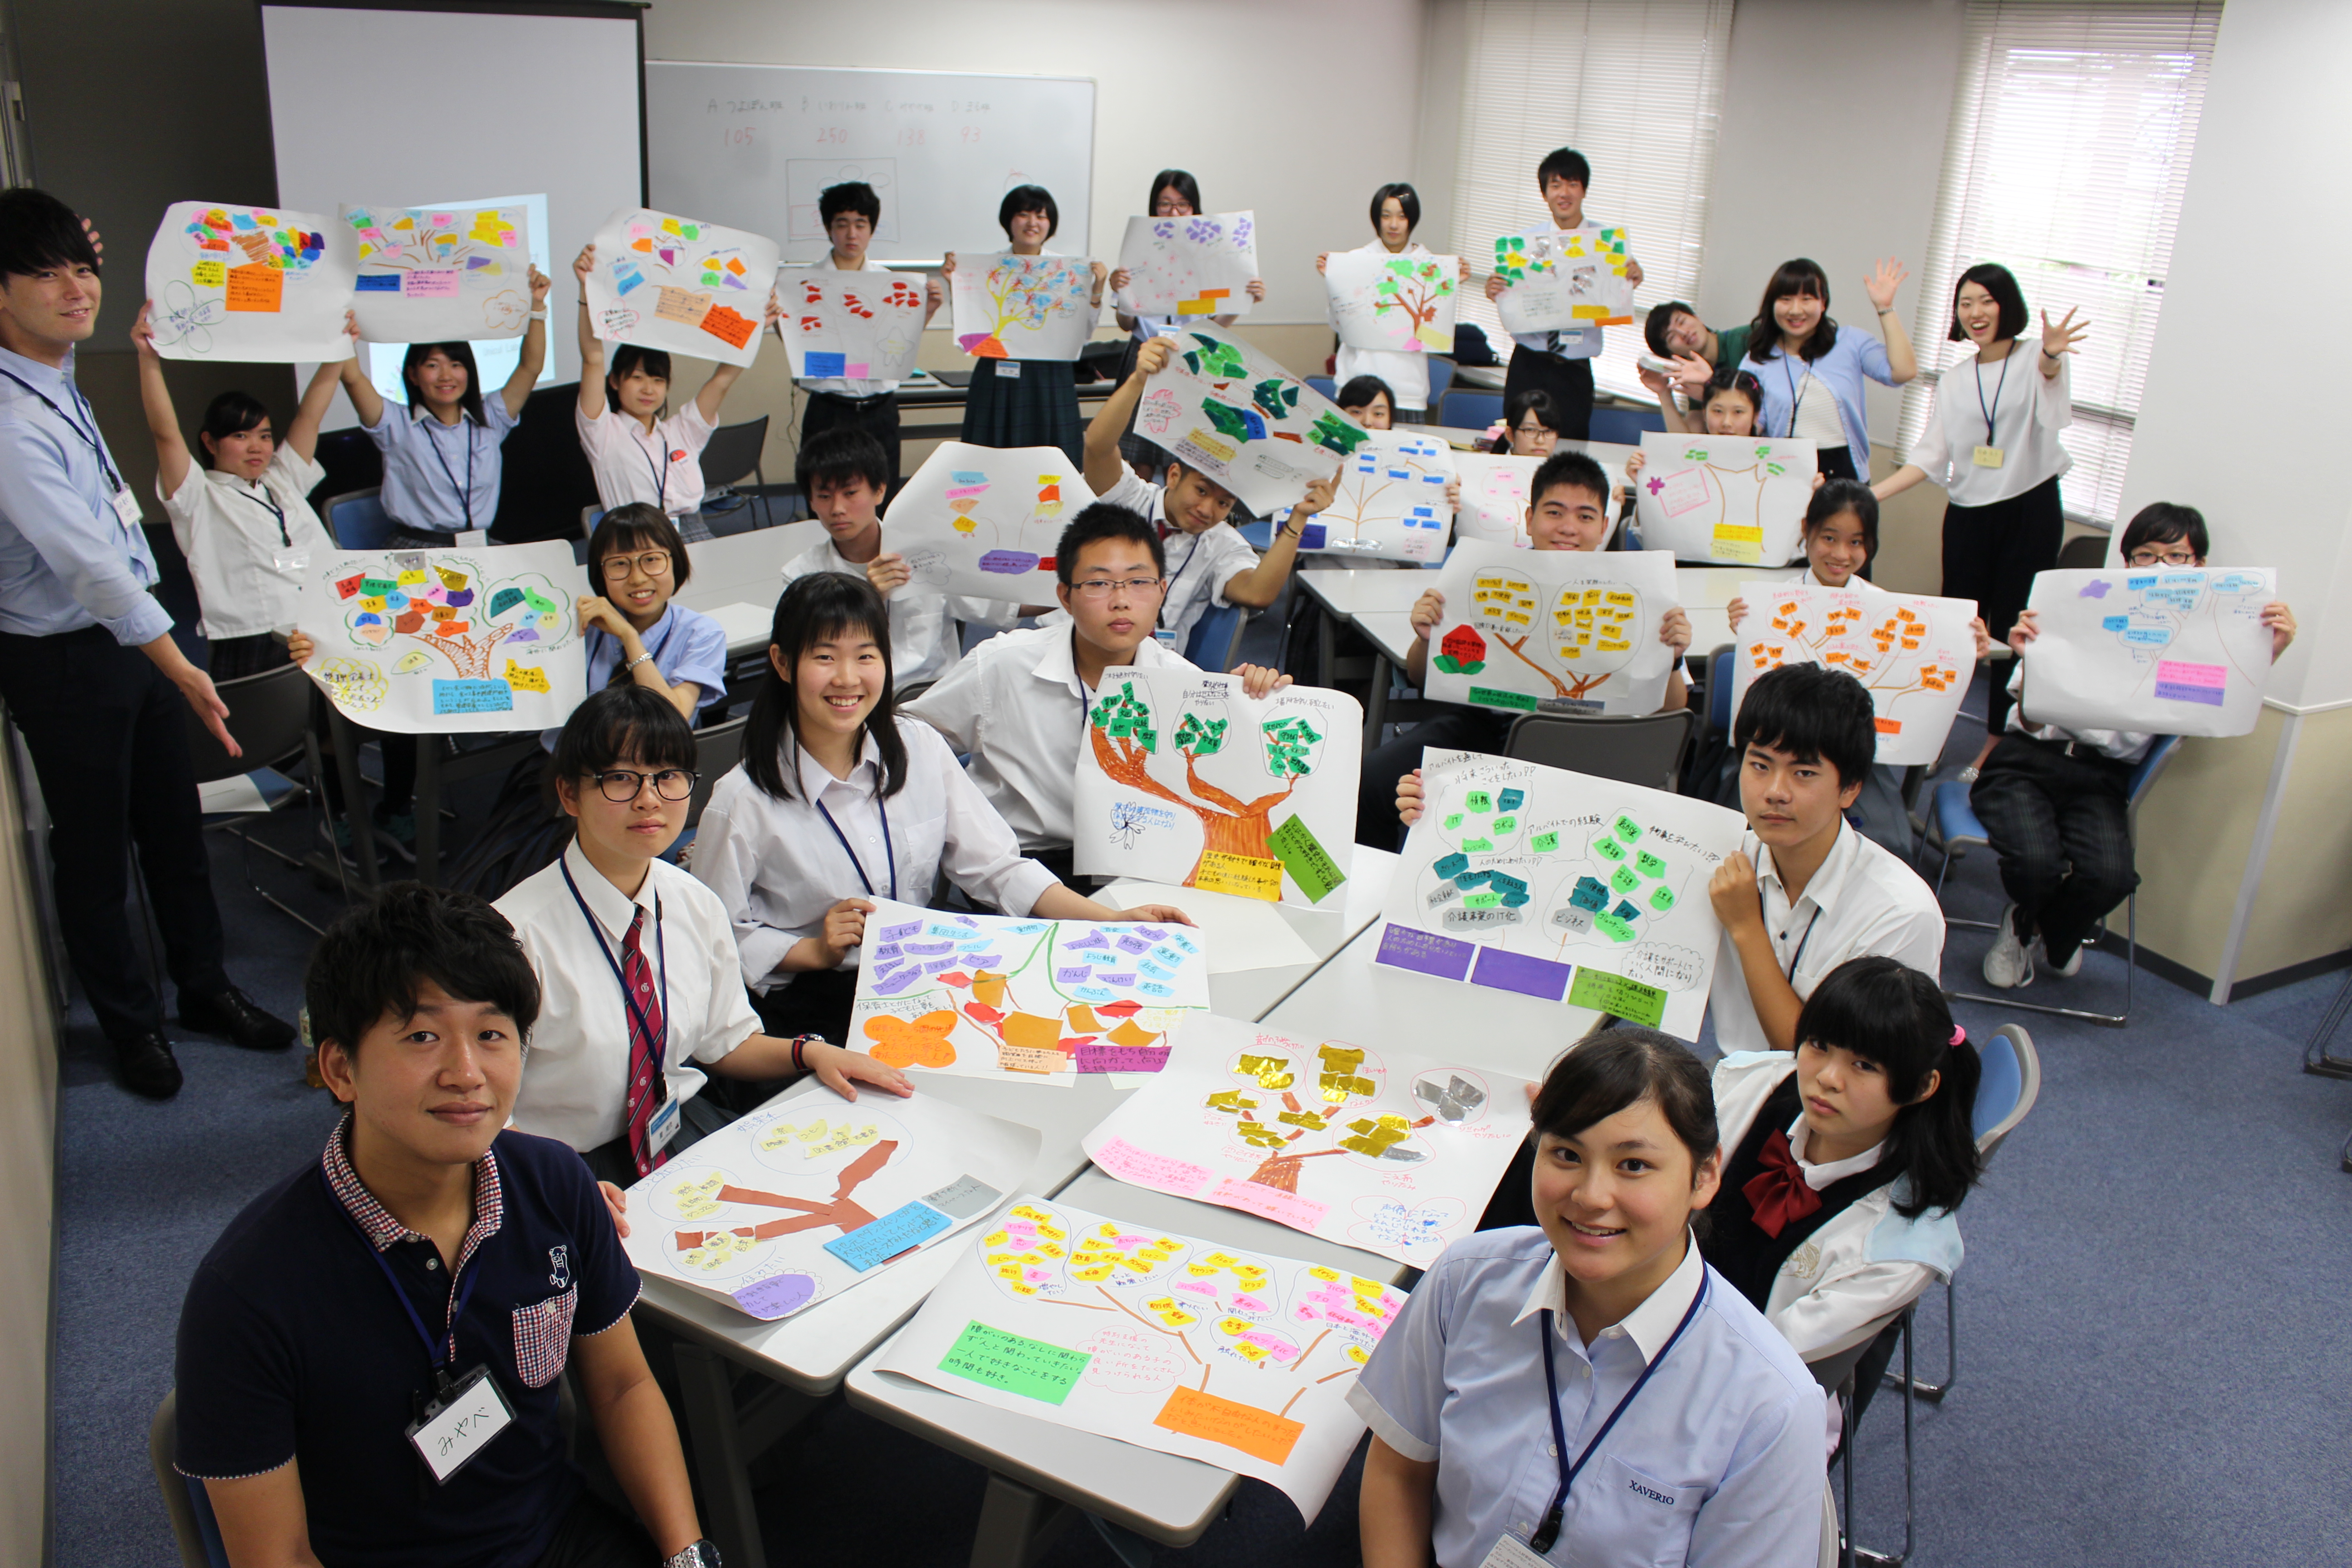 【お知らせ】会津若松市「グローバル人材育成プロジェクト ワークショップ及び成果報告会実施業務」を受託しました